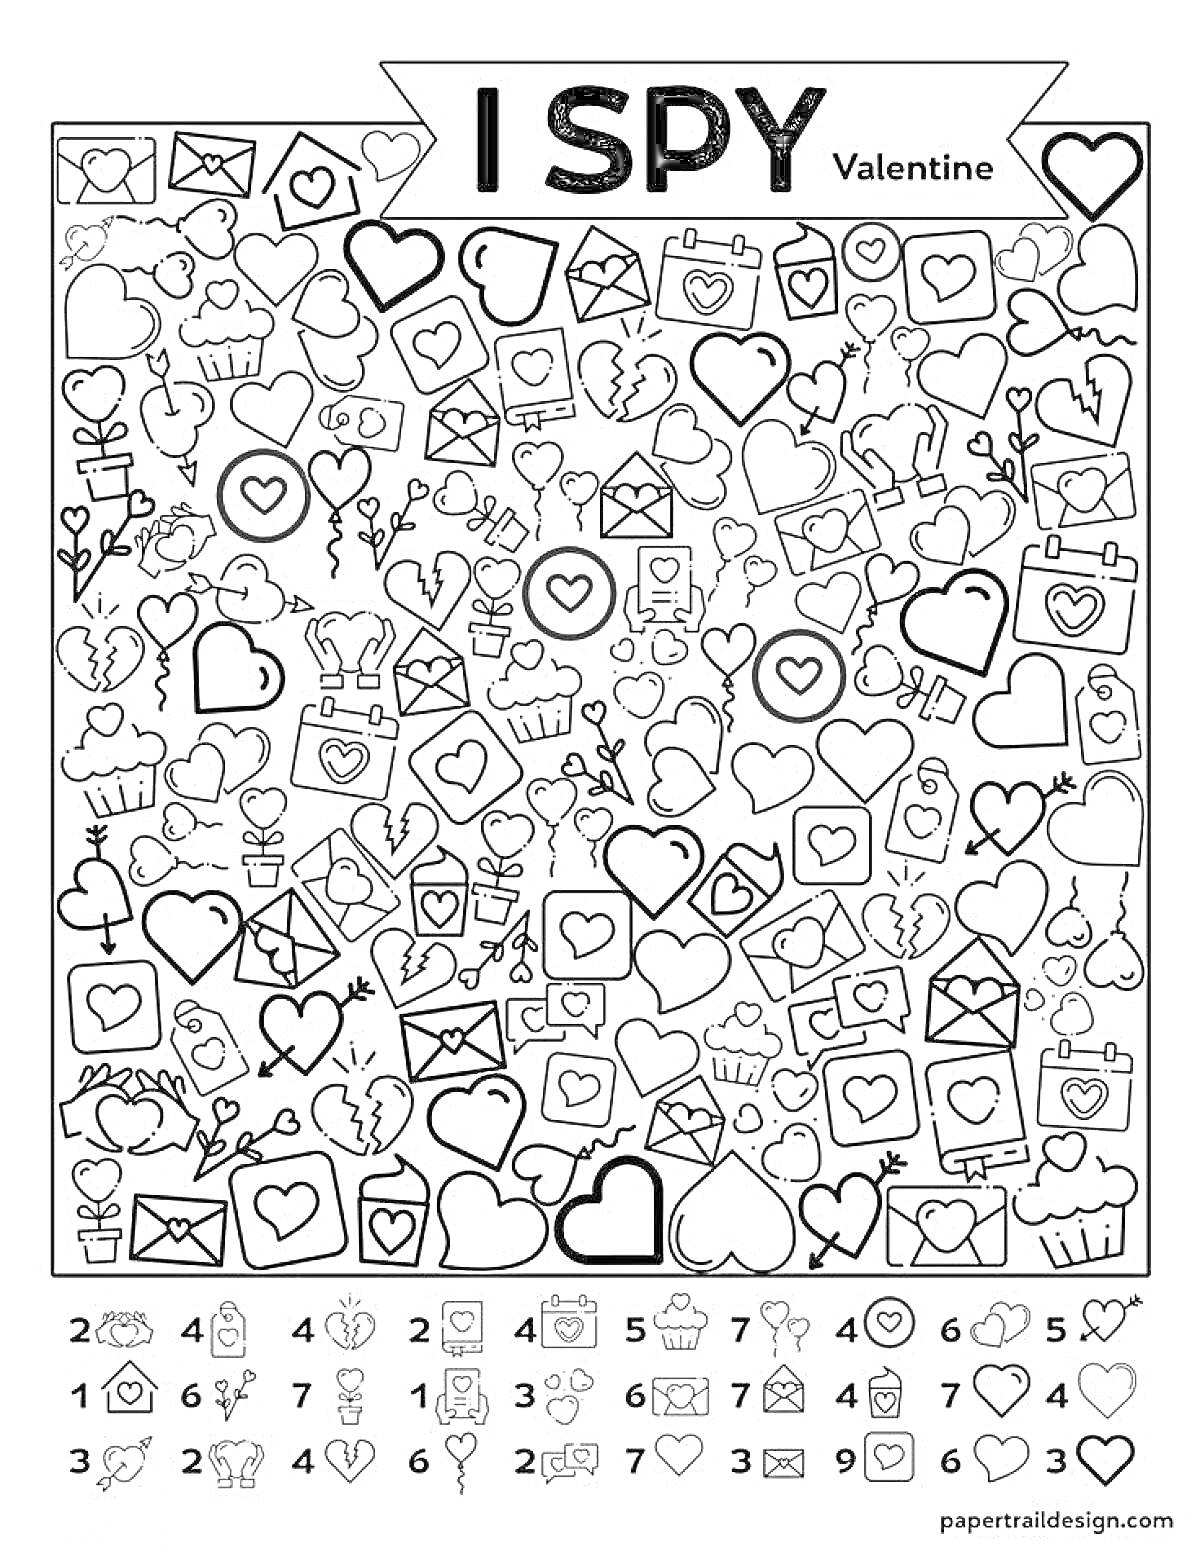 Раскраска Валентинка: срисую все: сердечки, открытки, цветы, подарки, кольца, кексы, плюшевая игрушка, ключ с сердцем